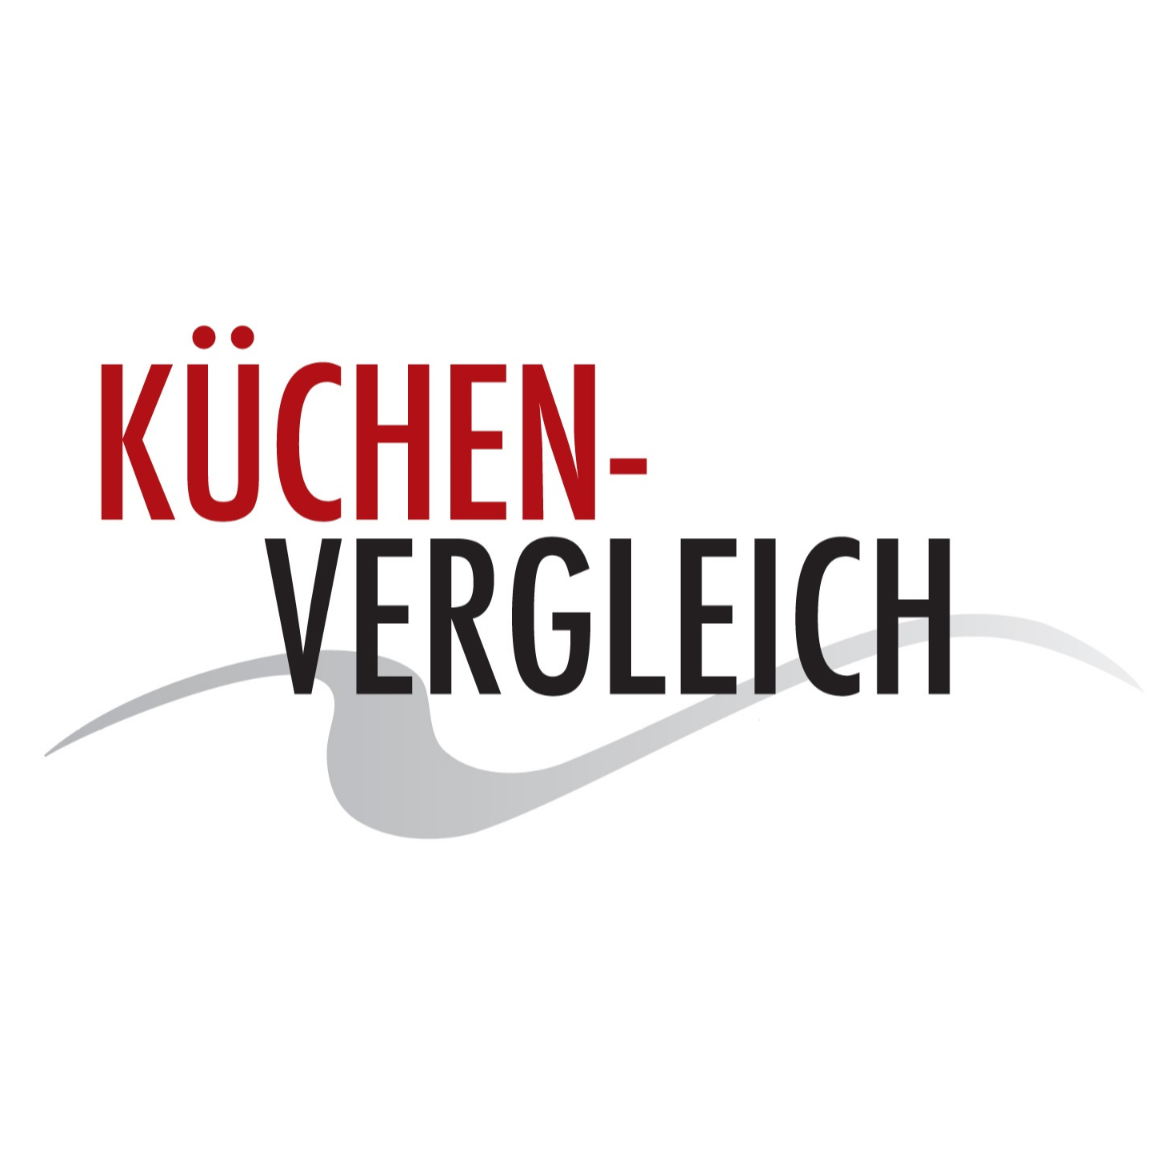 Küchenvergleich Jülich Logo